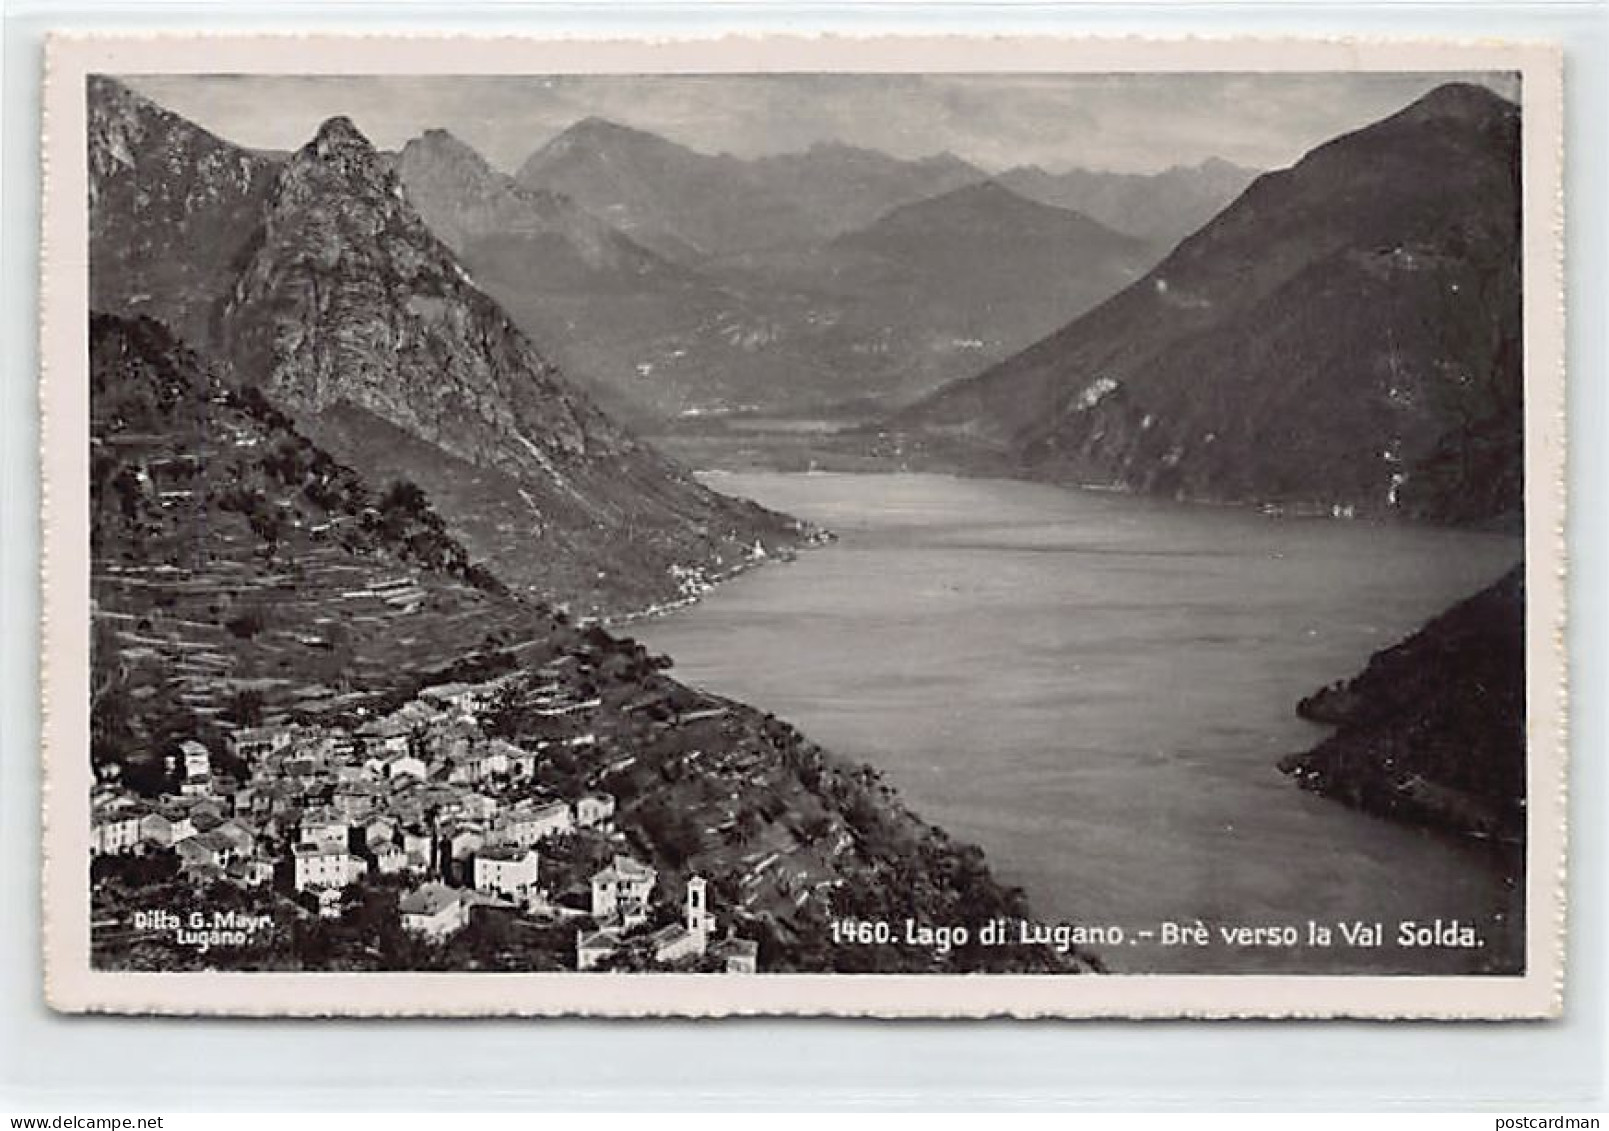 Svizzera - Lac De Lugano (TI) Brè Verso La Val Solda - Ed. Ditta G.Mayr1460 - Lake Lugano